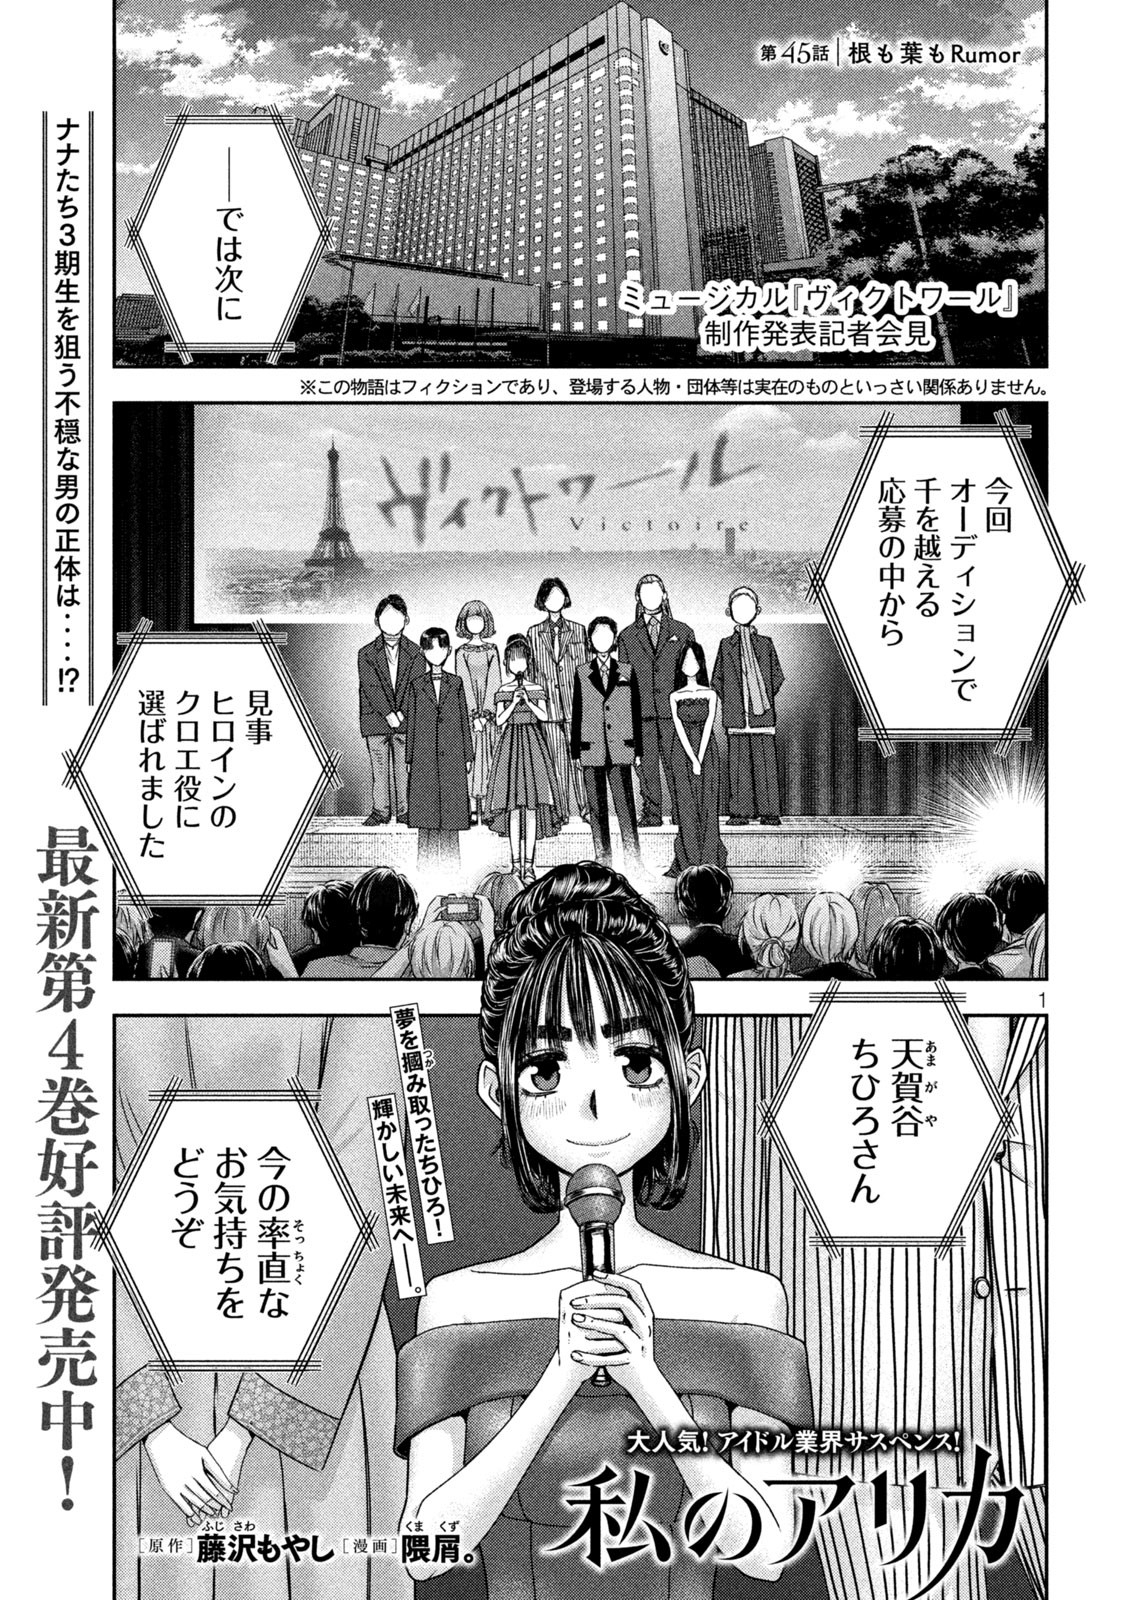 Watashi no Arika - Chapter 45 - Page 1